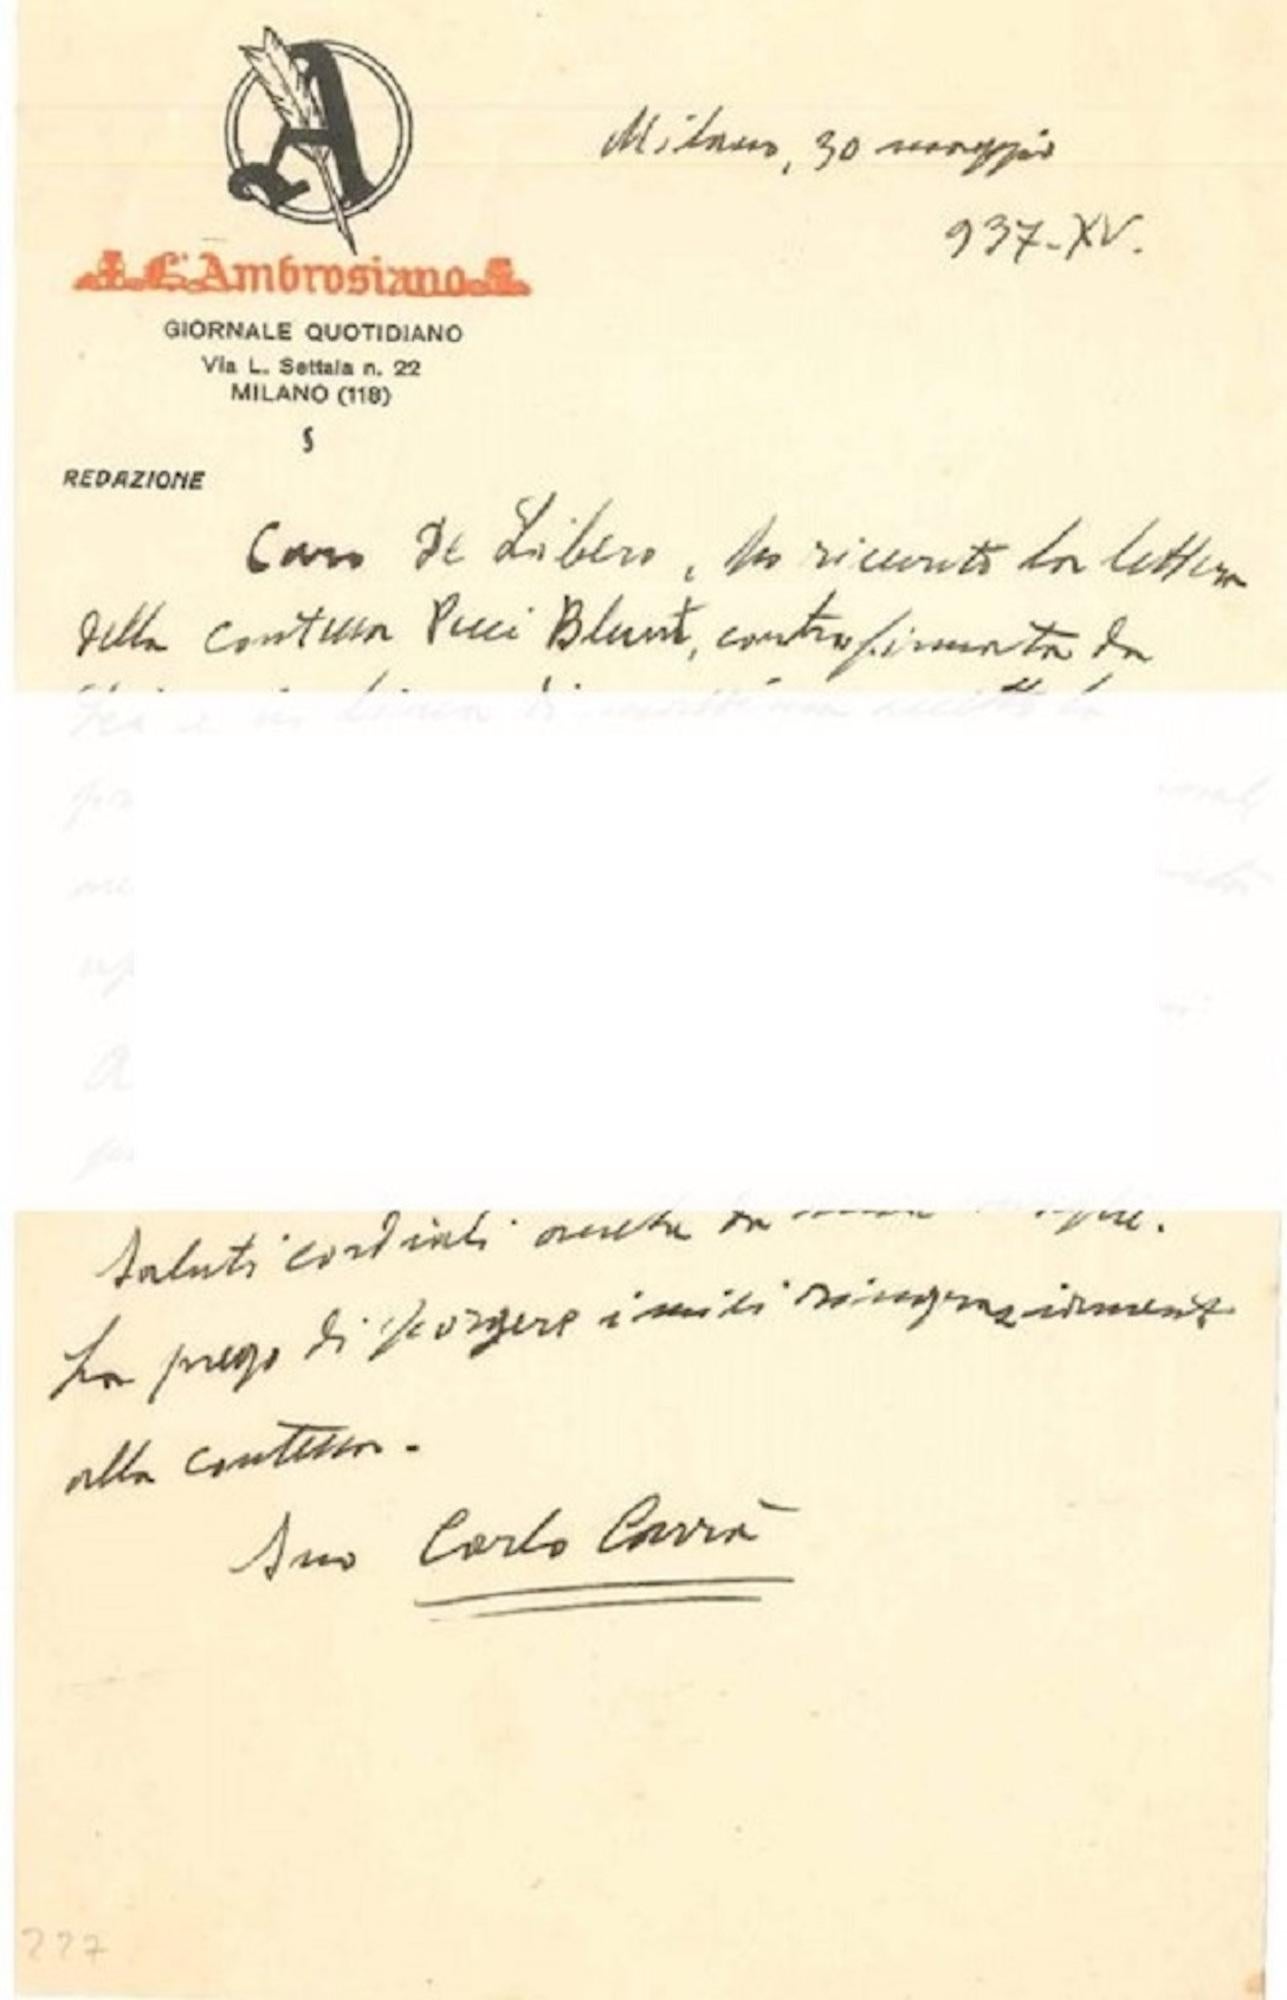 „“About the New York Exihibition““ – Brief von C. Carr an L. de Libero – 1937